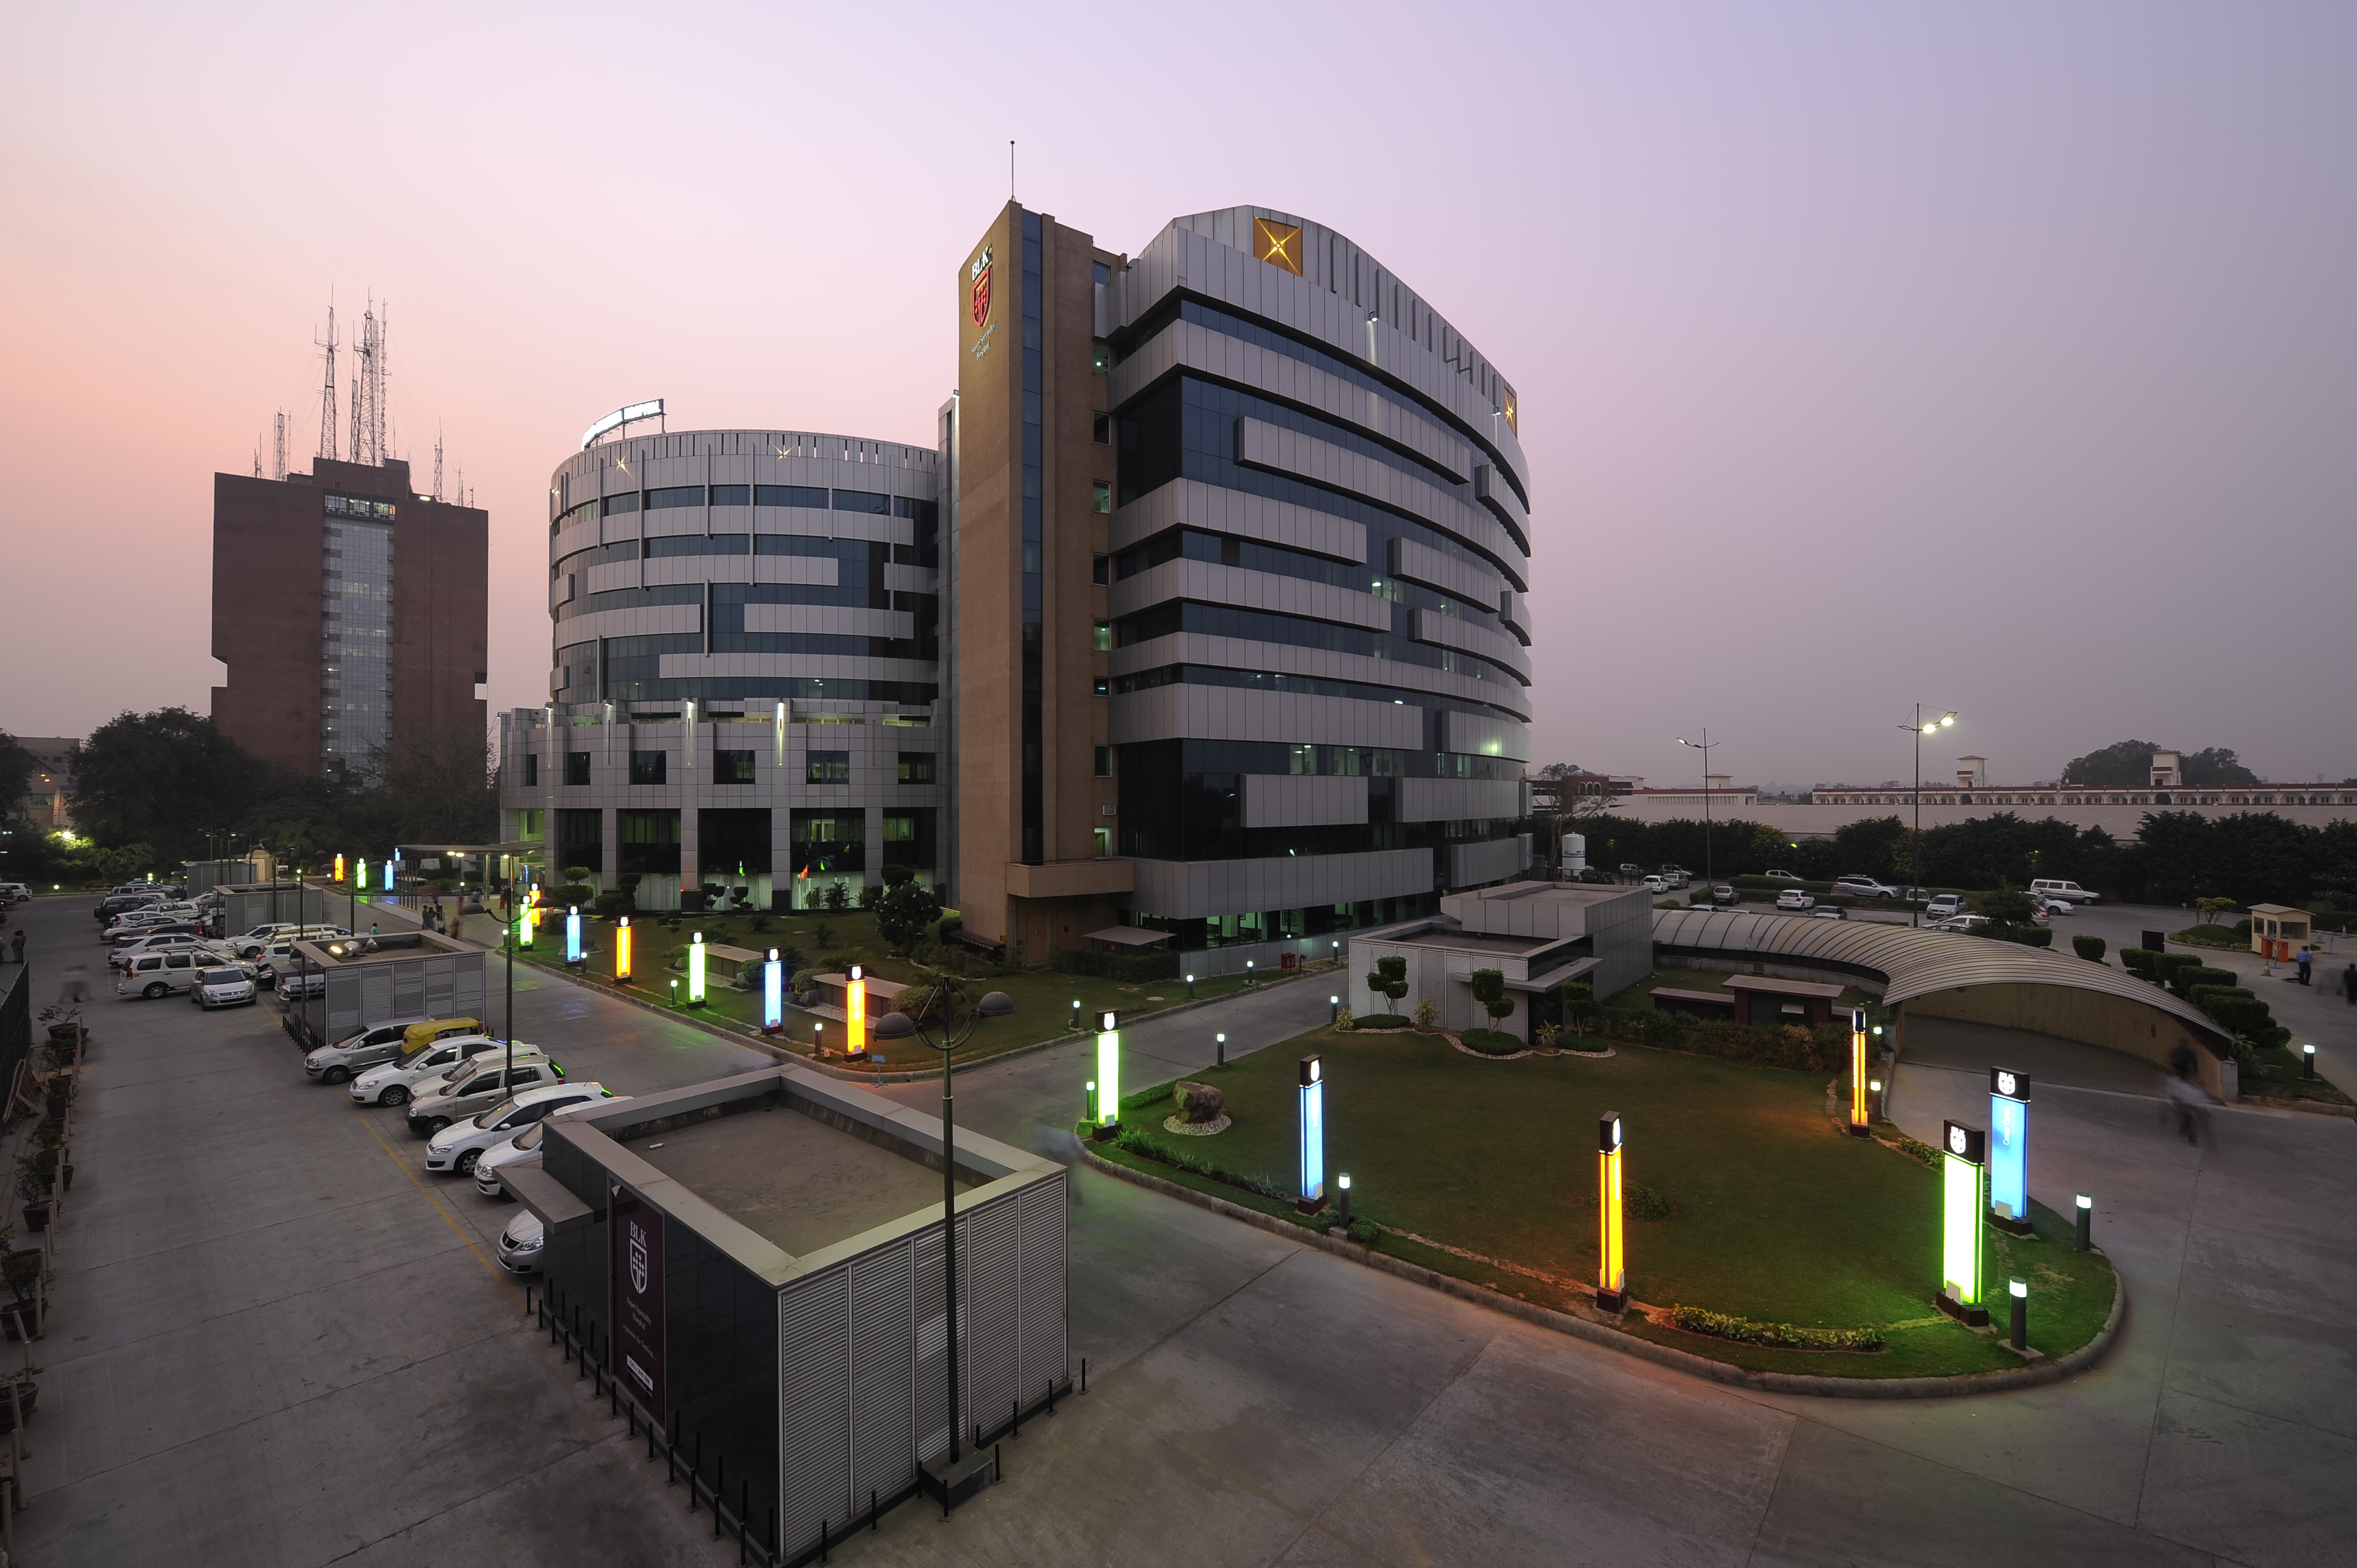 BLK Super Specialty Hospital New Delhi India | Medtravels